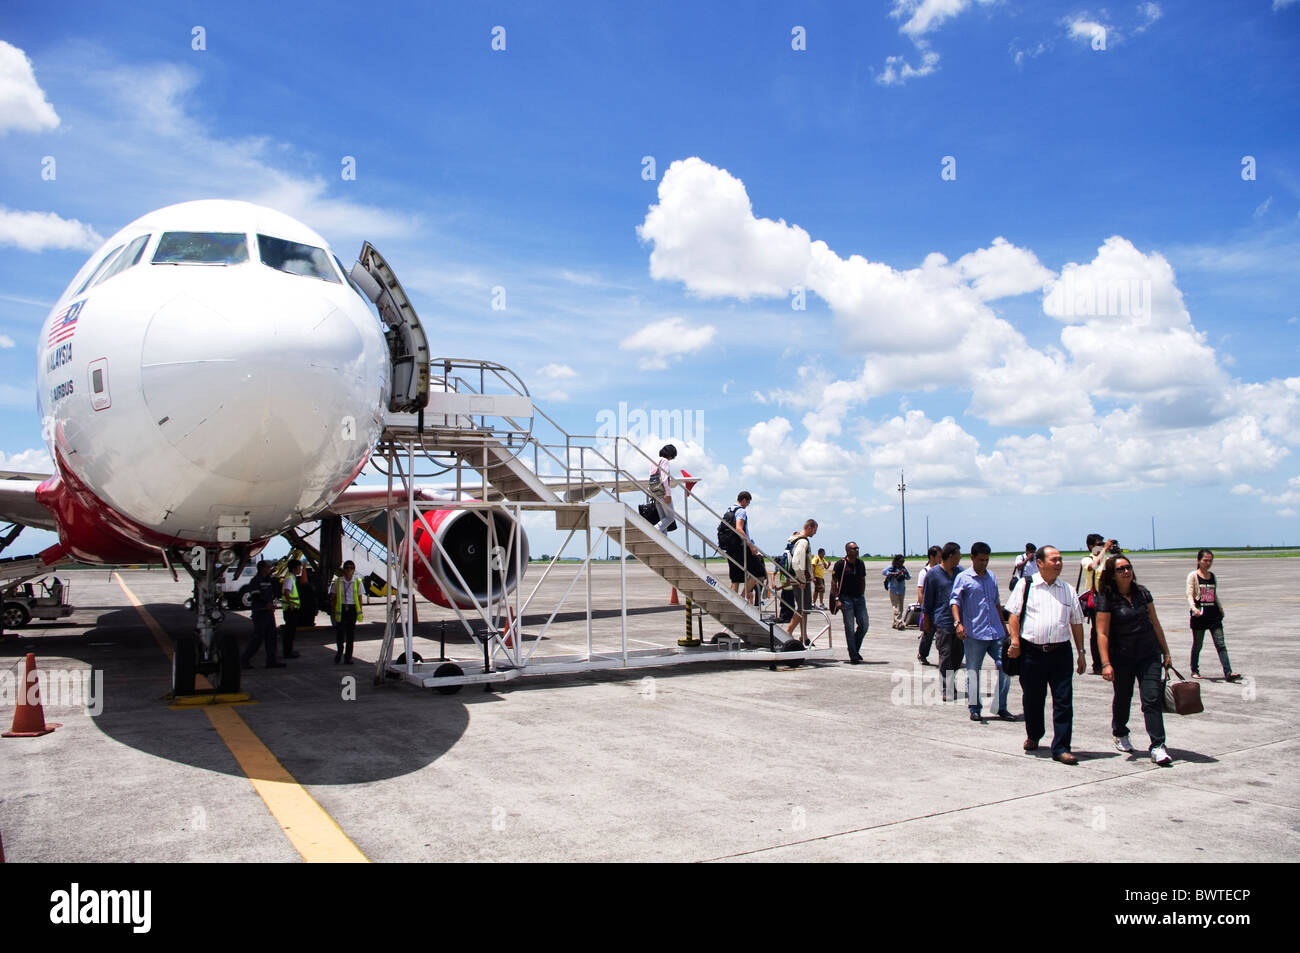 Scène d'atterrissage de vol Airasia, compagnie aérienne entreprise en Malaisie. Le budget de voyage. Banque D'Images